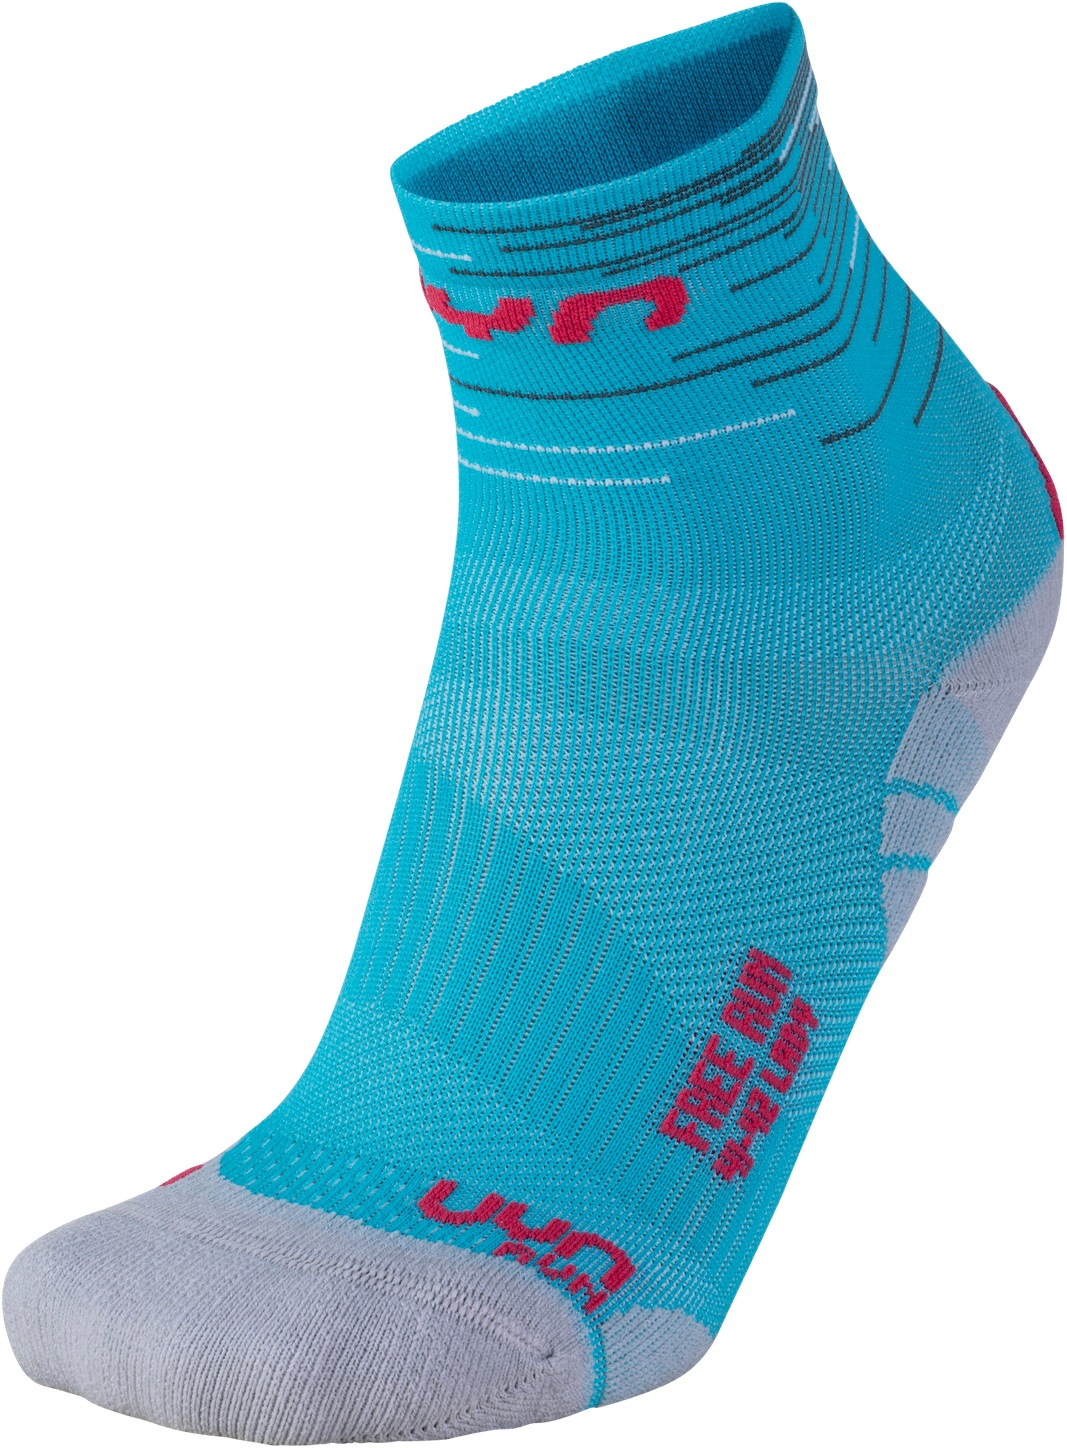 Ponožky UYN FREE RUN - modrá/sivá/ružová